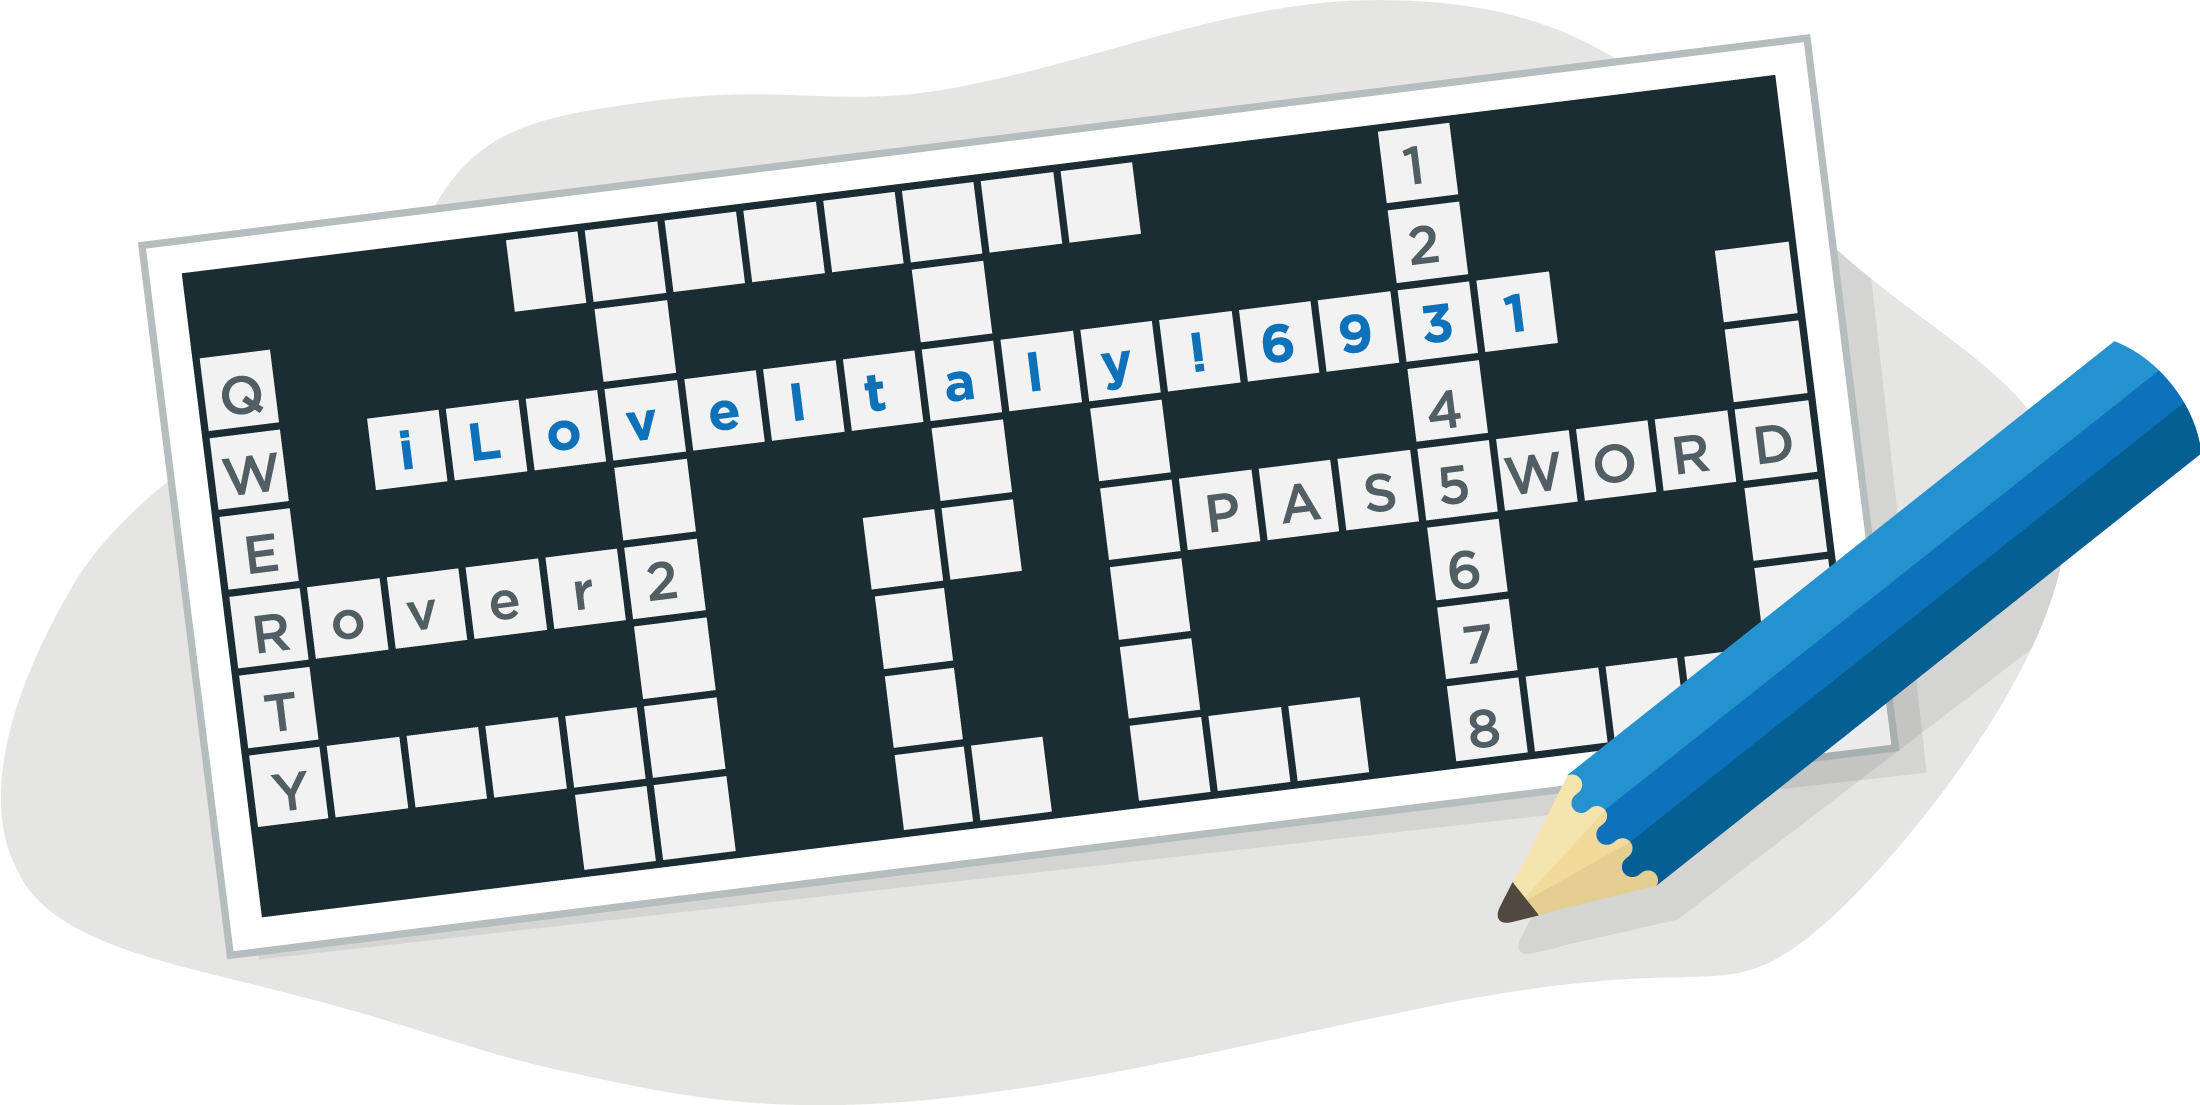 単純なパスワードが書き込まれたクロスワードパズルと iLoveItaly!6931 というパスフレーズが入った 1 行。